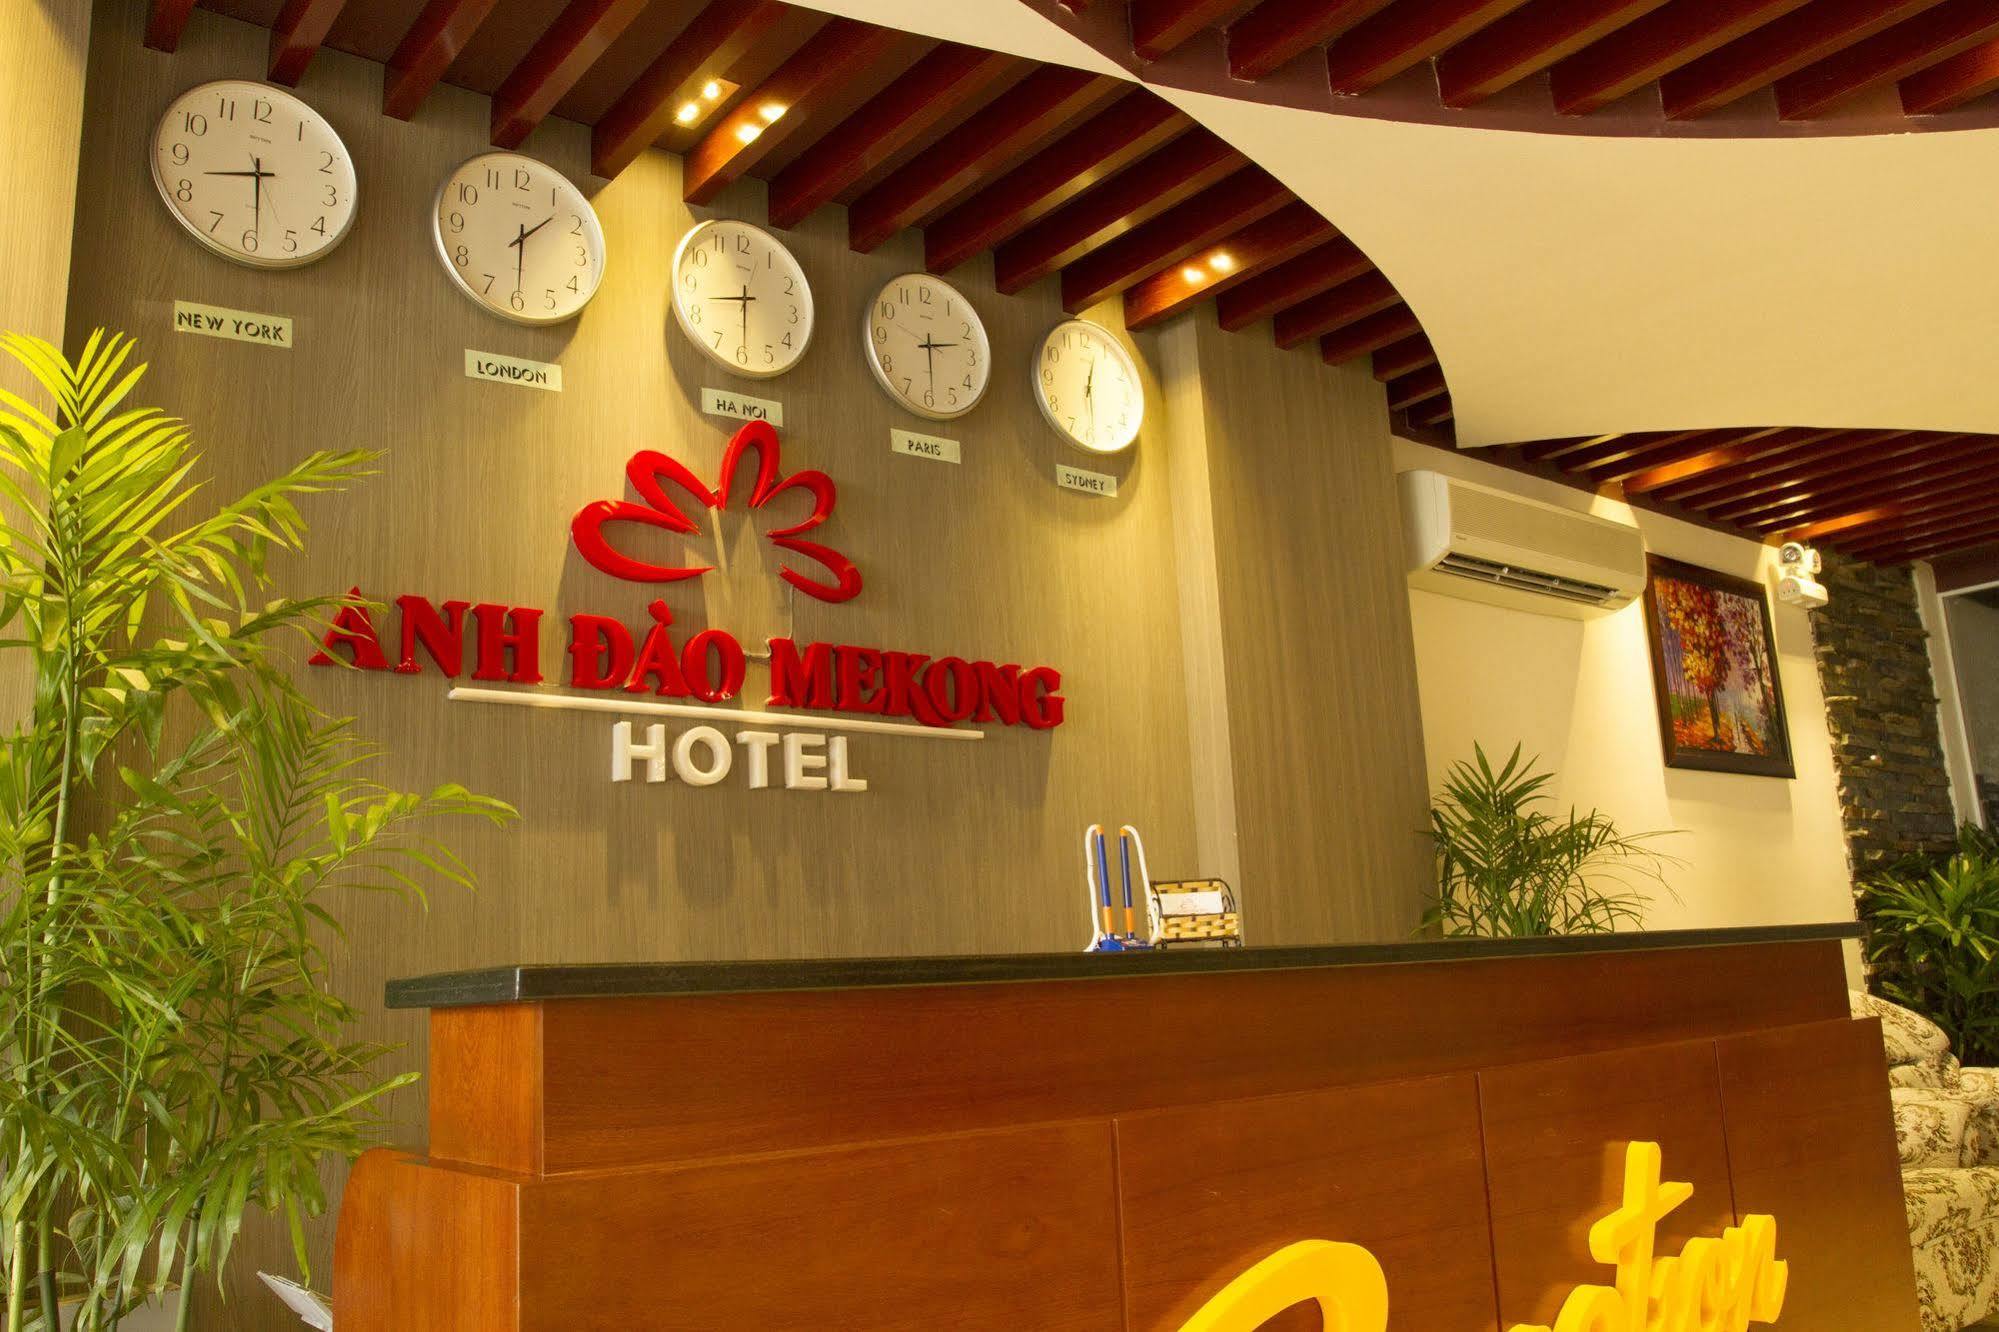 Anh Dao Mekong Hotel 껀터 외부 사진